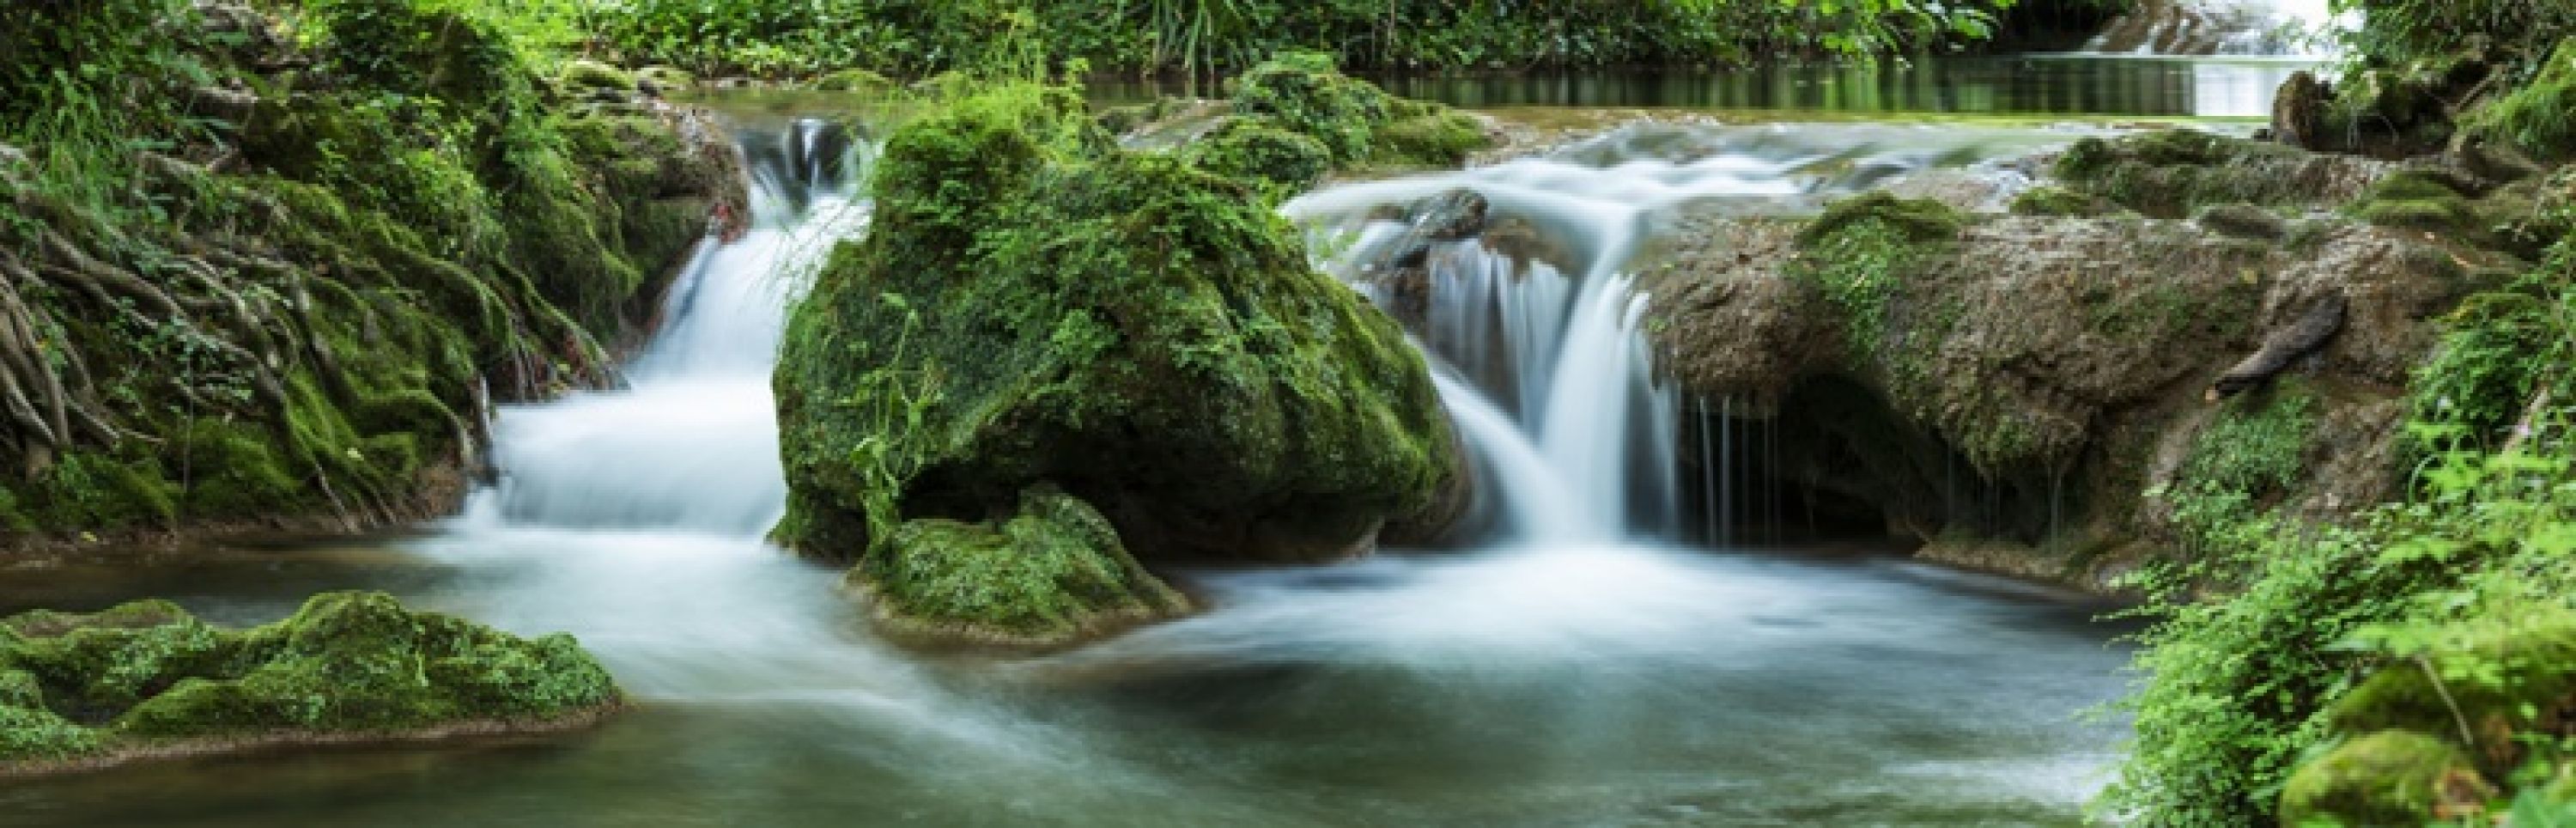 Duschrückwand "Grüner Wasserfall"